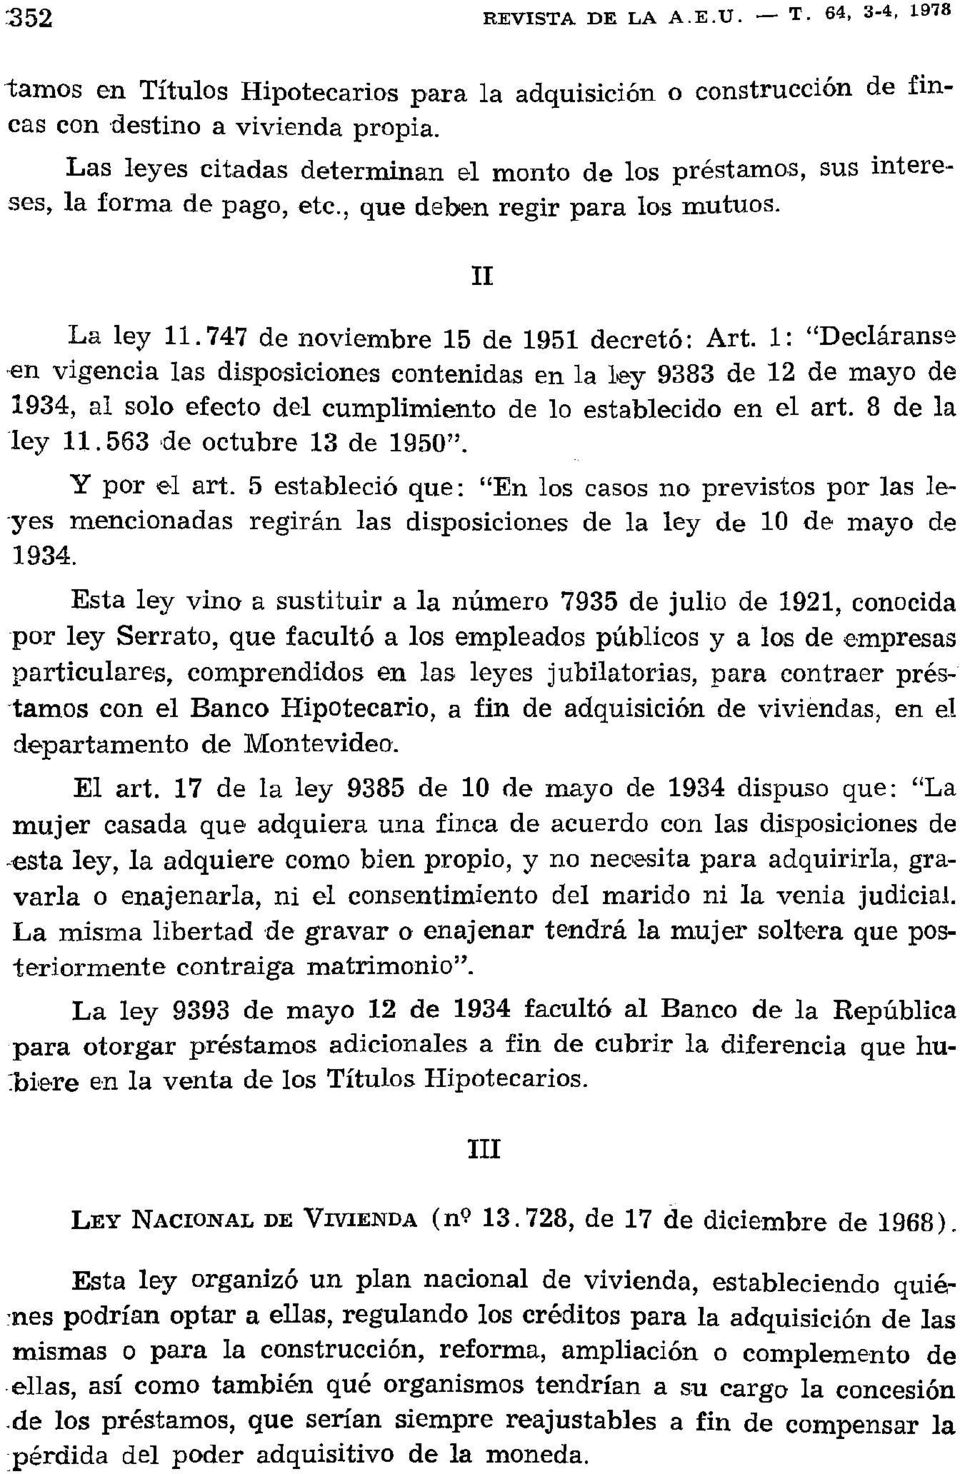 1: "Decláranse en vigencia las disposiciones contenidas en la ley 9383 de 12 de mayo de 1934, al solo efecto del cumplimiento de lo establecido en el art. 8 de la ley 11.563 de octubre 13 de 1950".